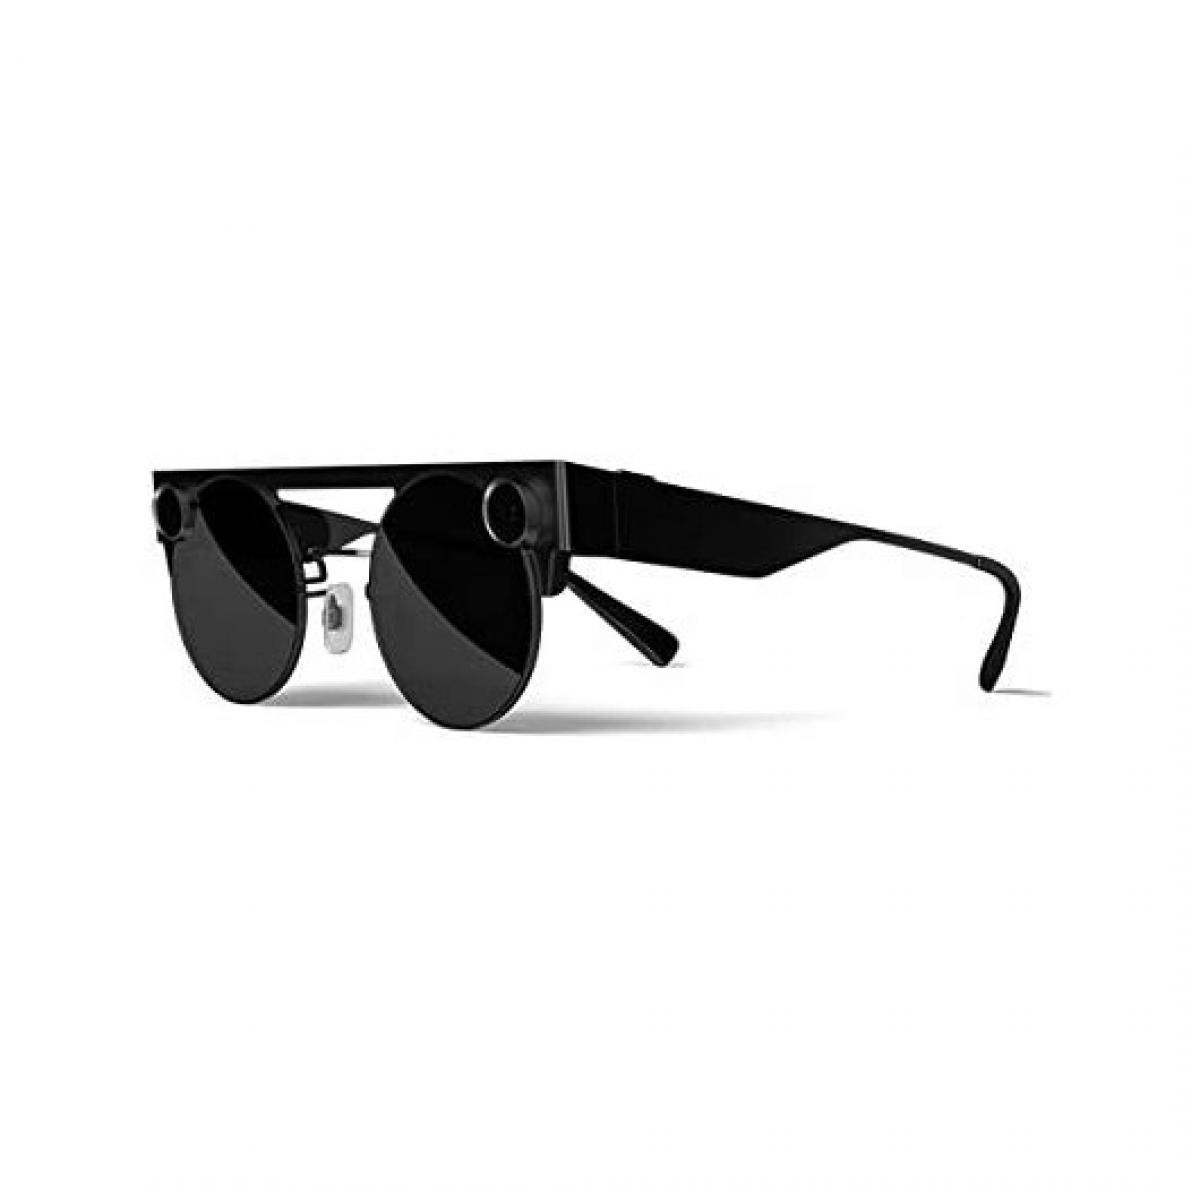 Snap - Spectacles 3, Les lunettes de réalité augmenté - Casques de réalité virtuelle